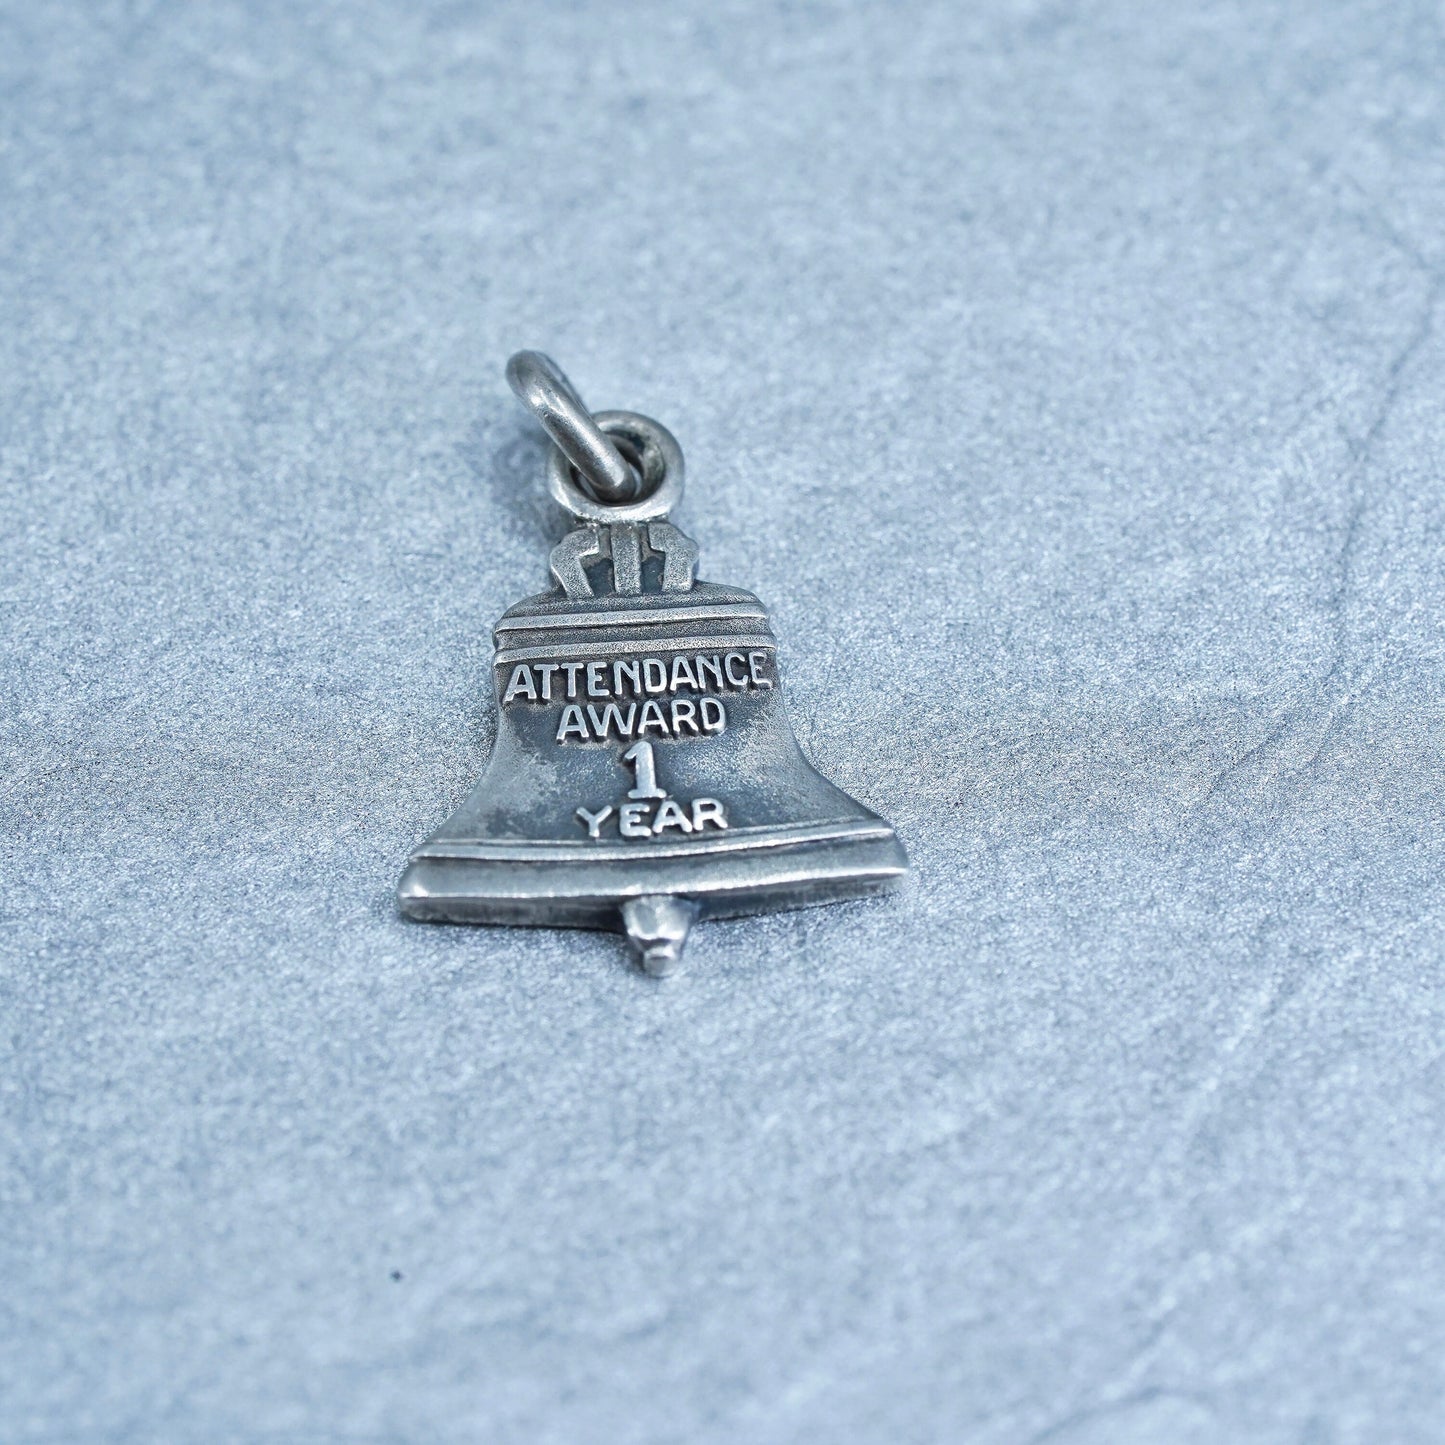 Sterling silver handmade 925 bell telephone attendance award charm pendant